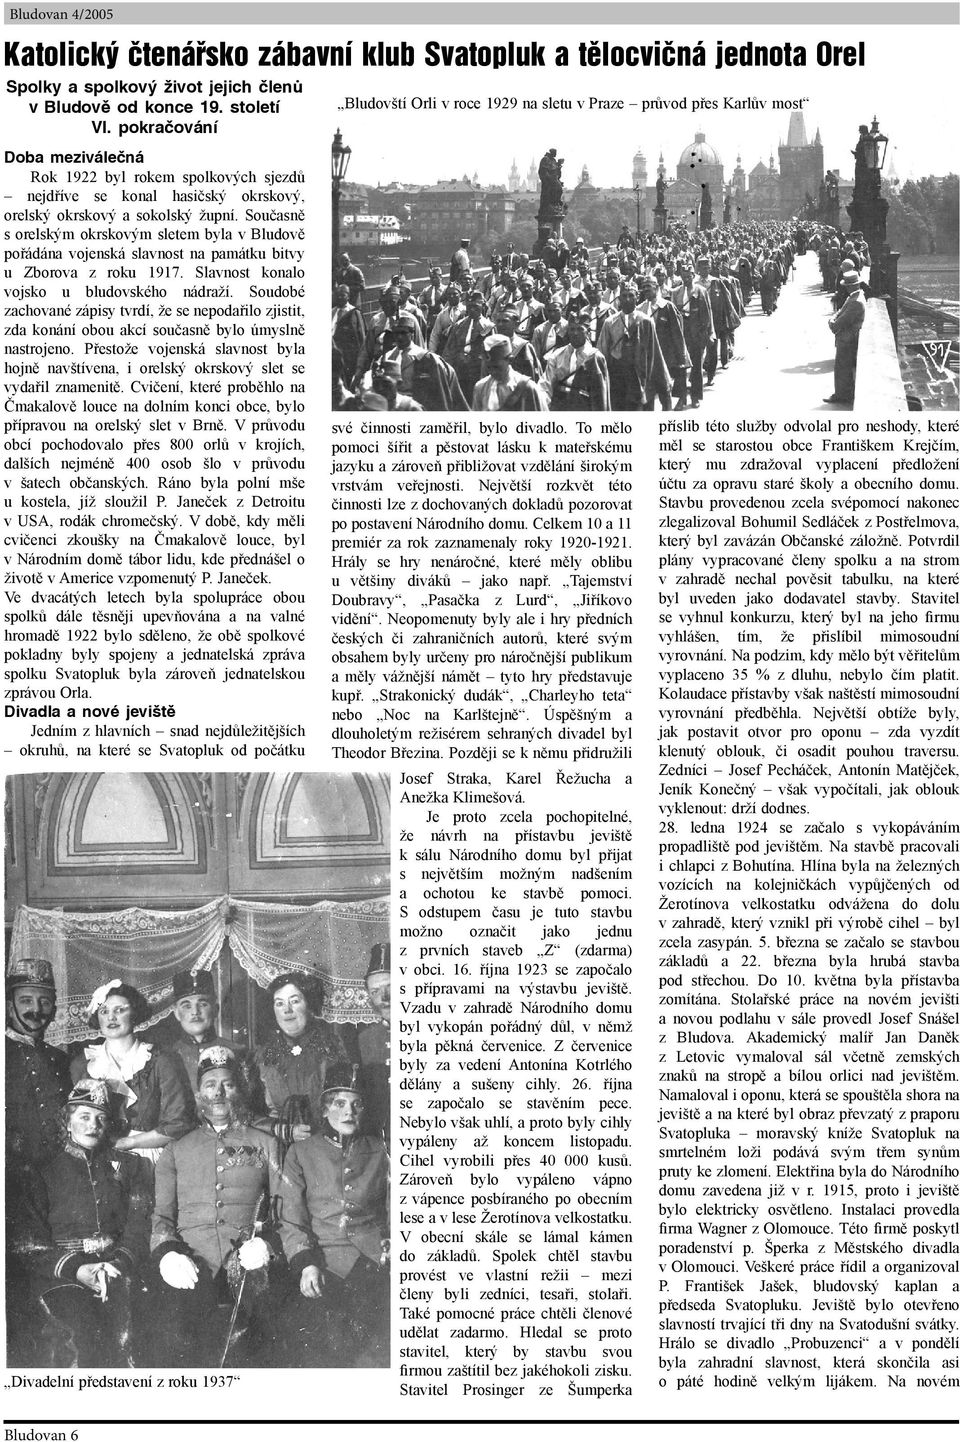 župní. Současně s orelským okrskovým sletem byla v Bludově pořádána vojenská slavnost na památku bitvy u Zborova z roku 1917. Slavnost konalo vojsko u bludovského nádraží.